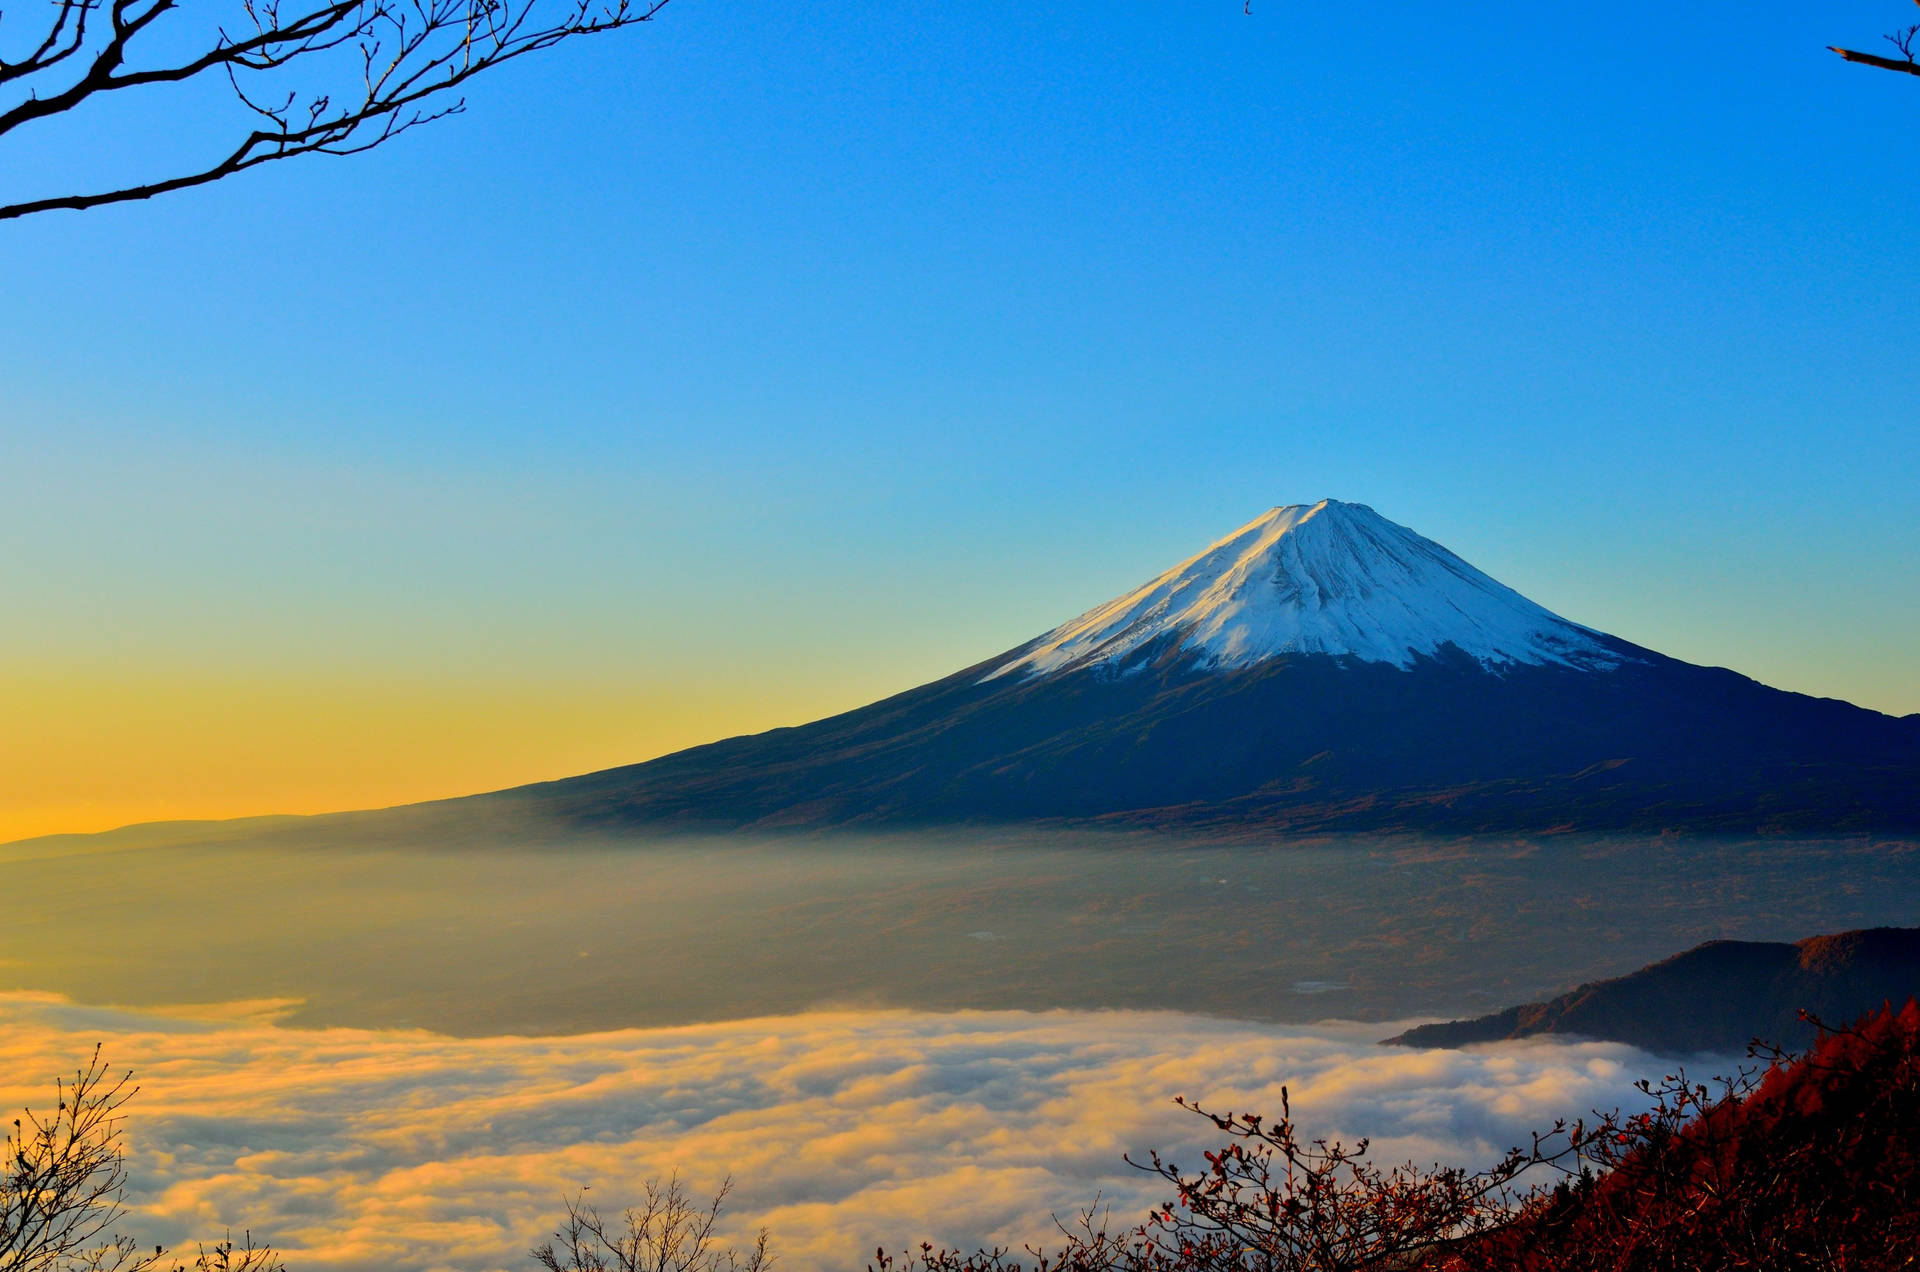 Hintergrundbildfür Den Computer Oder Das Mobiltelefon: Mount Fuji, Japan In 4k-auflösung. Wallpaper